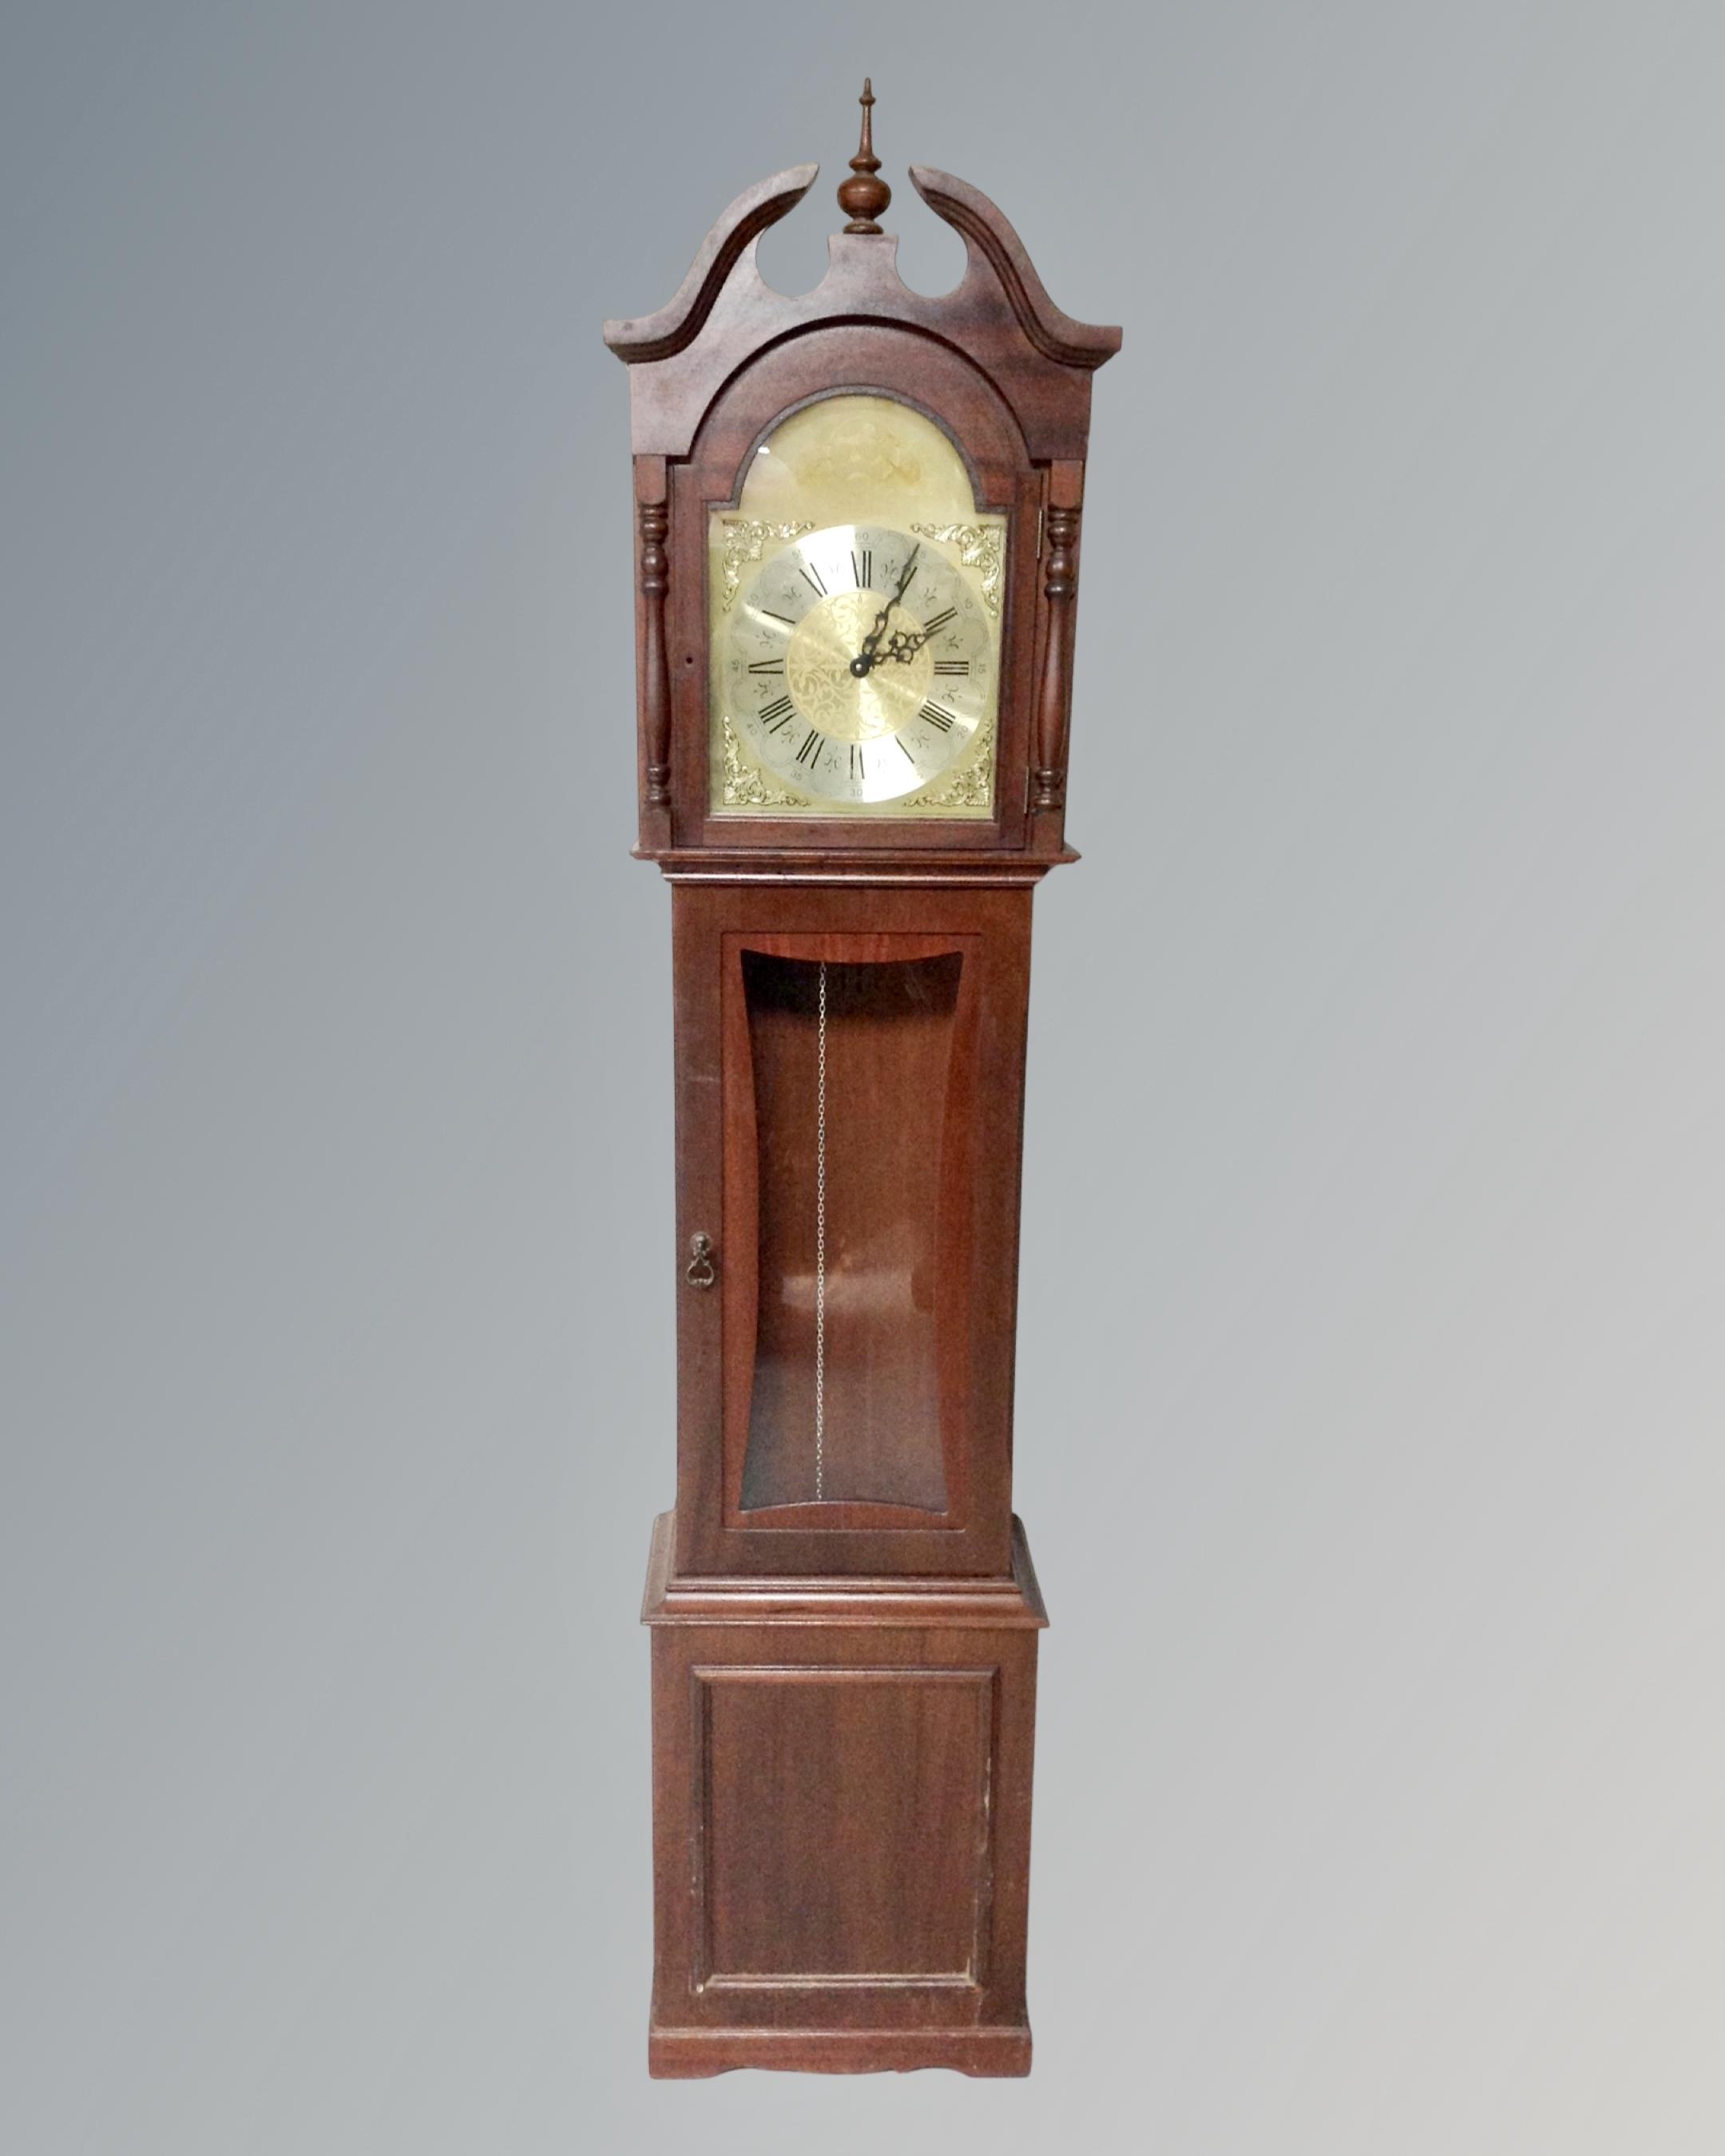 A Tempus Fugit longcase clock.